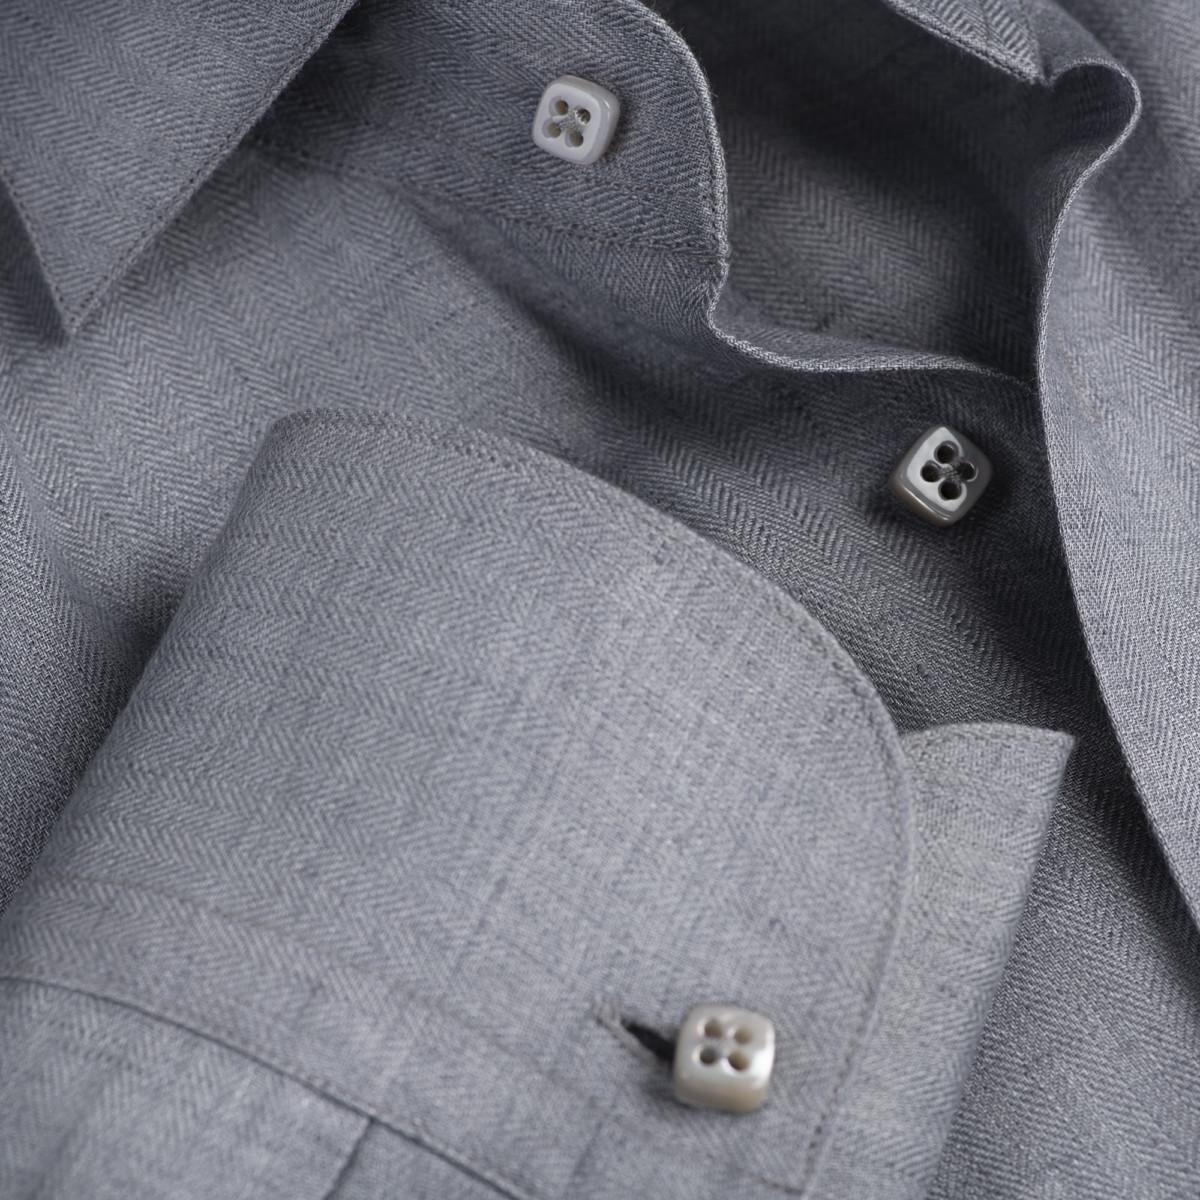 Camicia Hand Made button details dark grey color 100% Capri